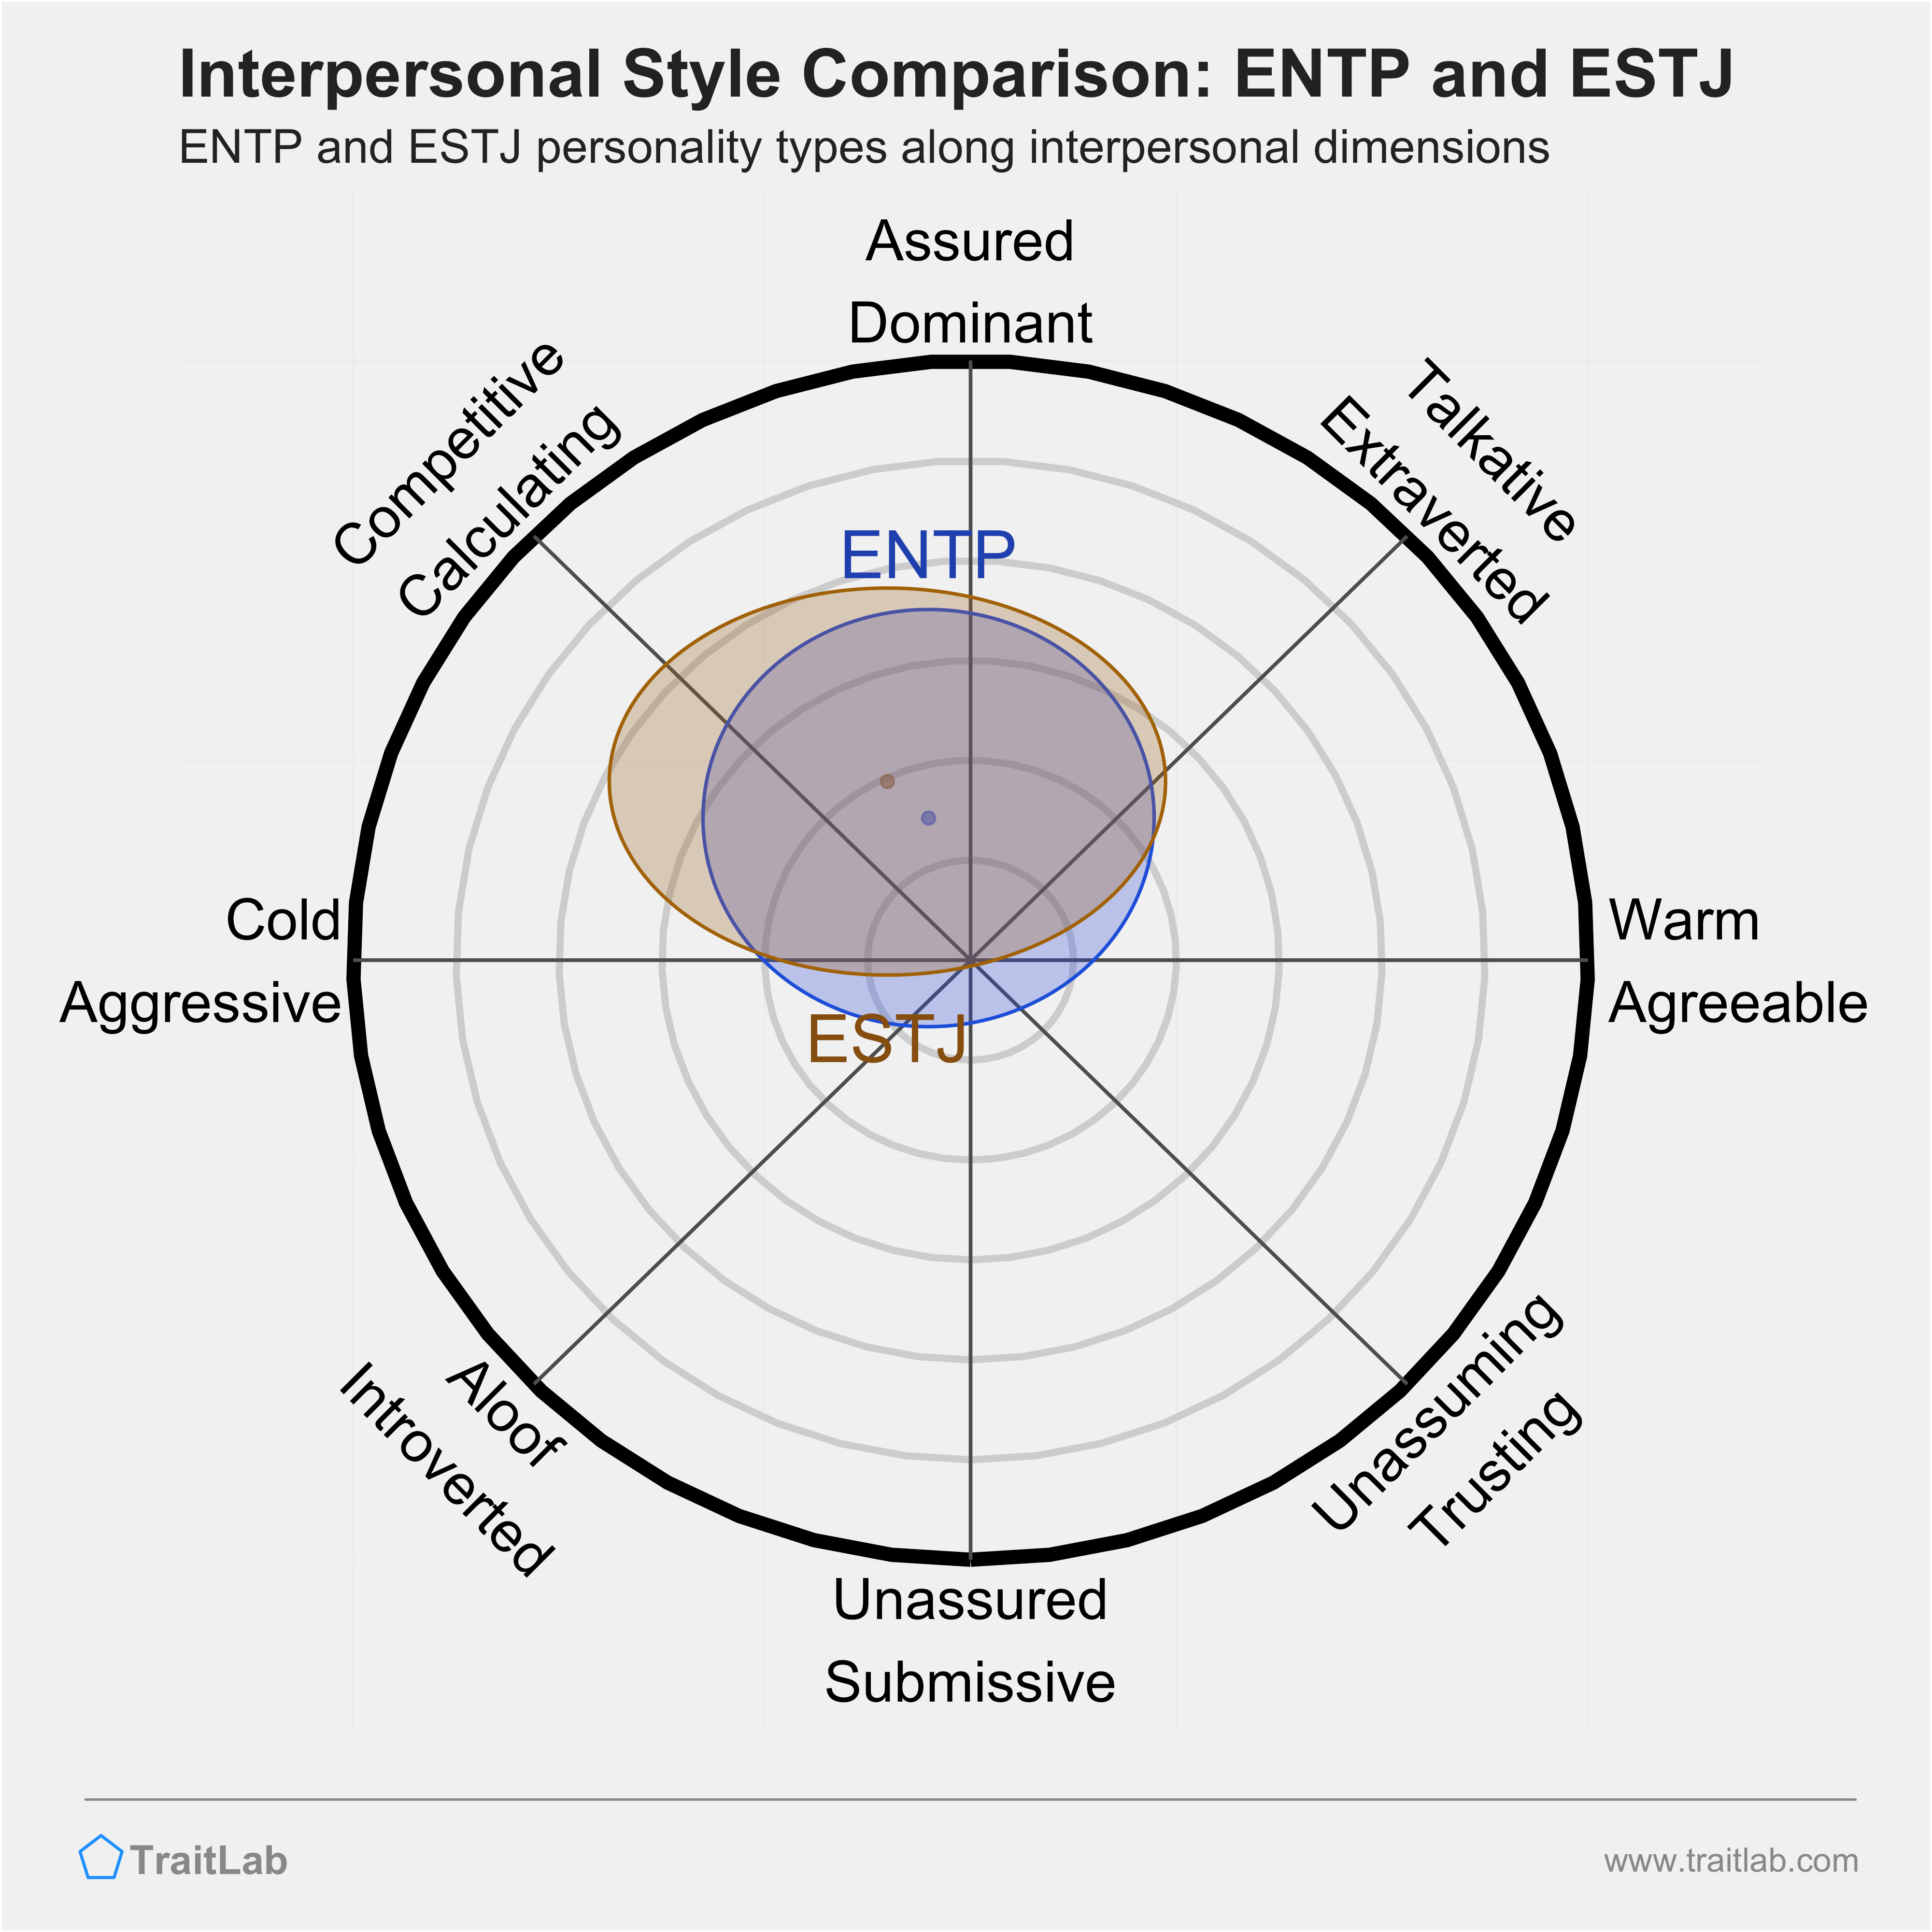 ENTP and ESTJ comparison across interpersonal dimensions